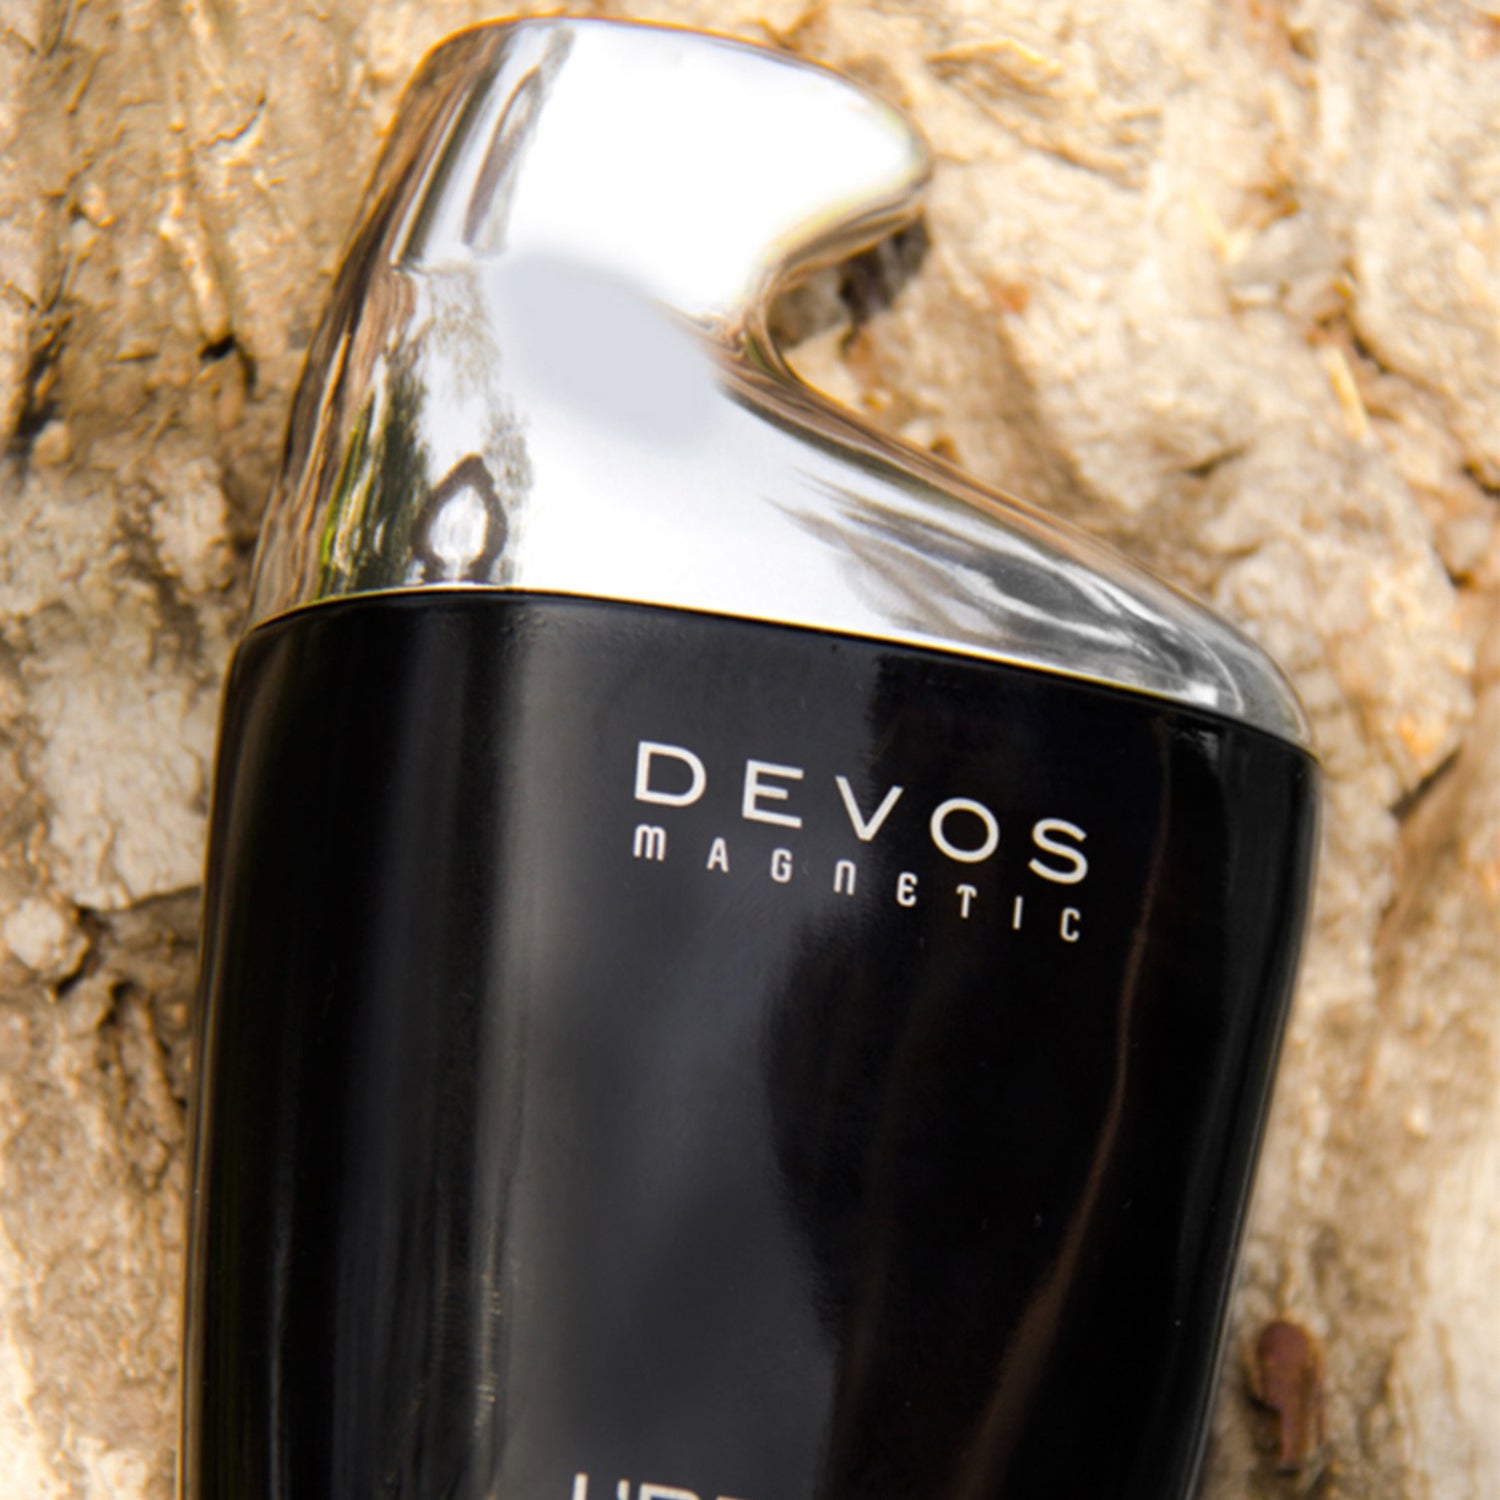  DEVOS MAGNETIC SEDUCTION by L'Bel Cologne EAU DE TOILETTE Pour  Homme fragrance 3.4 Oz (3.4 Oz) : Beauty & Personal Care